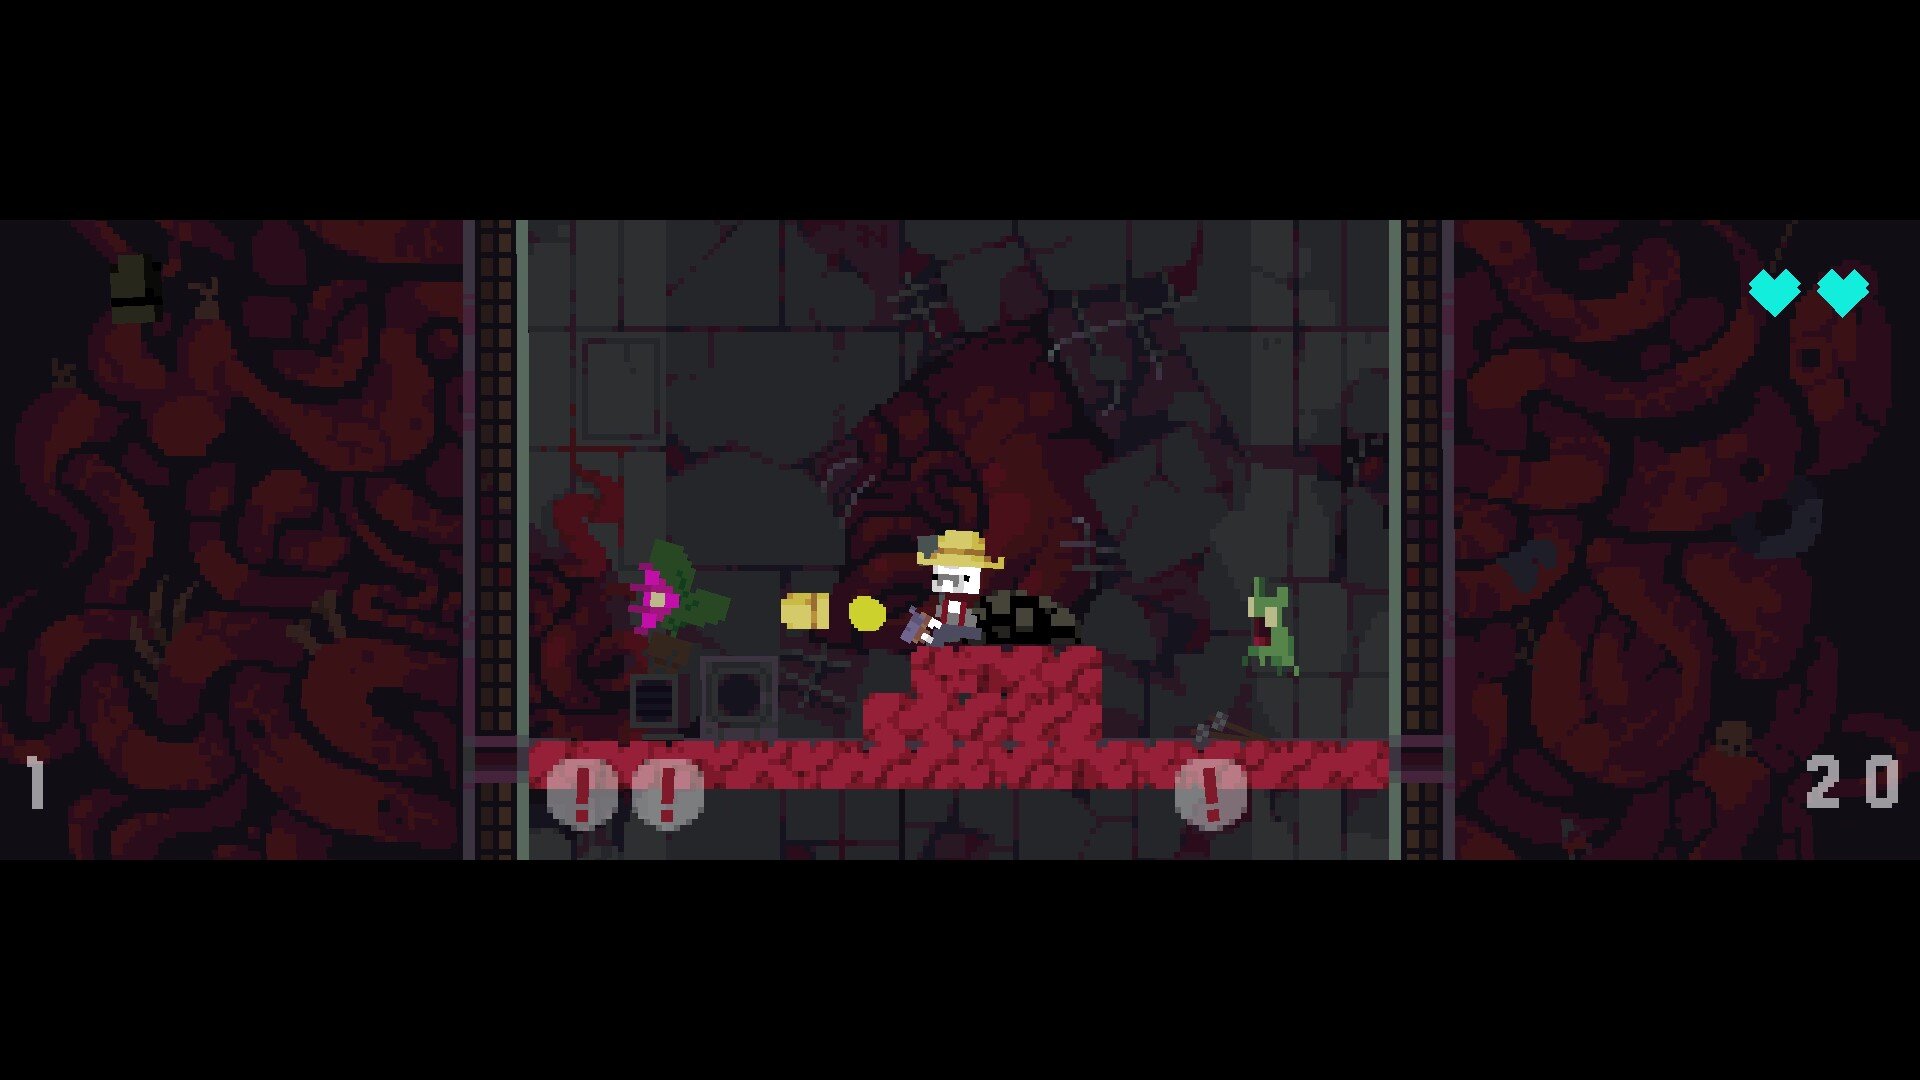 Gutwhale game screenshot, multiple enemies